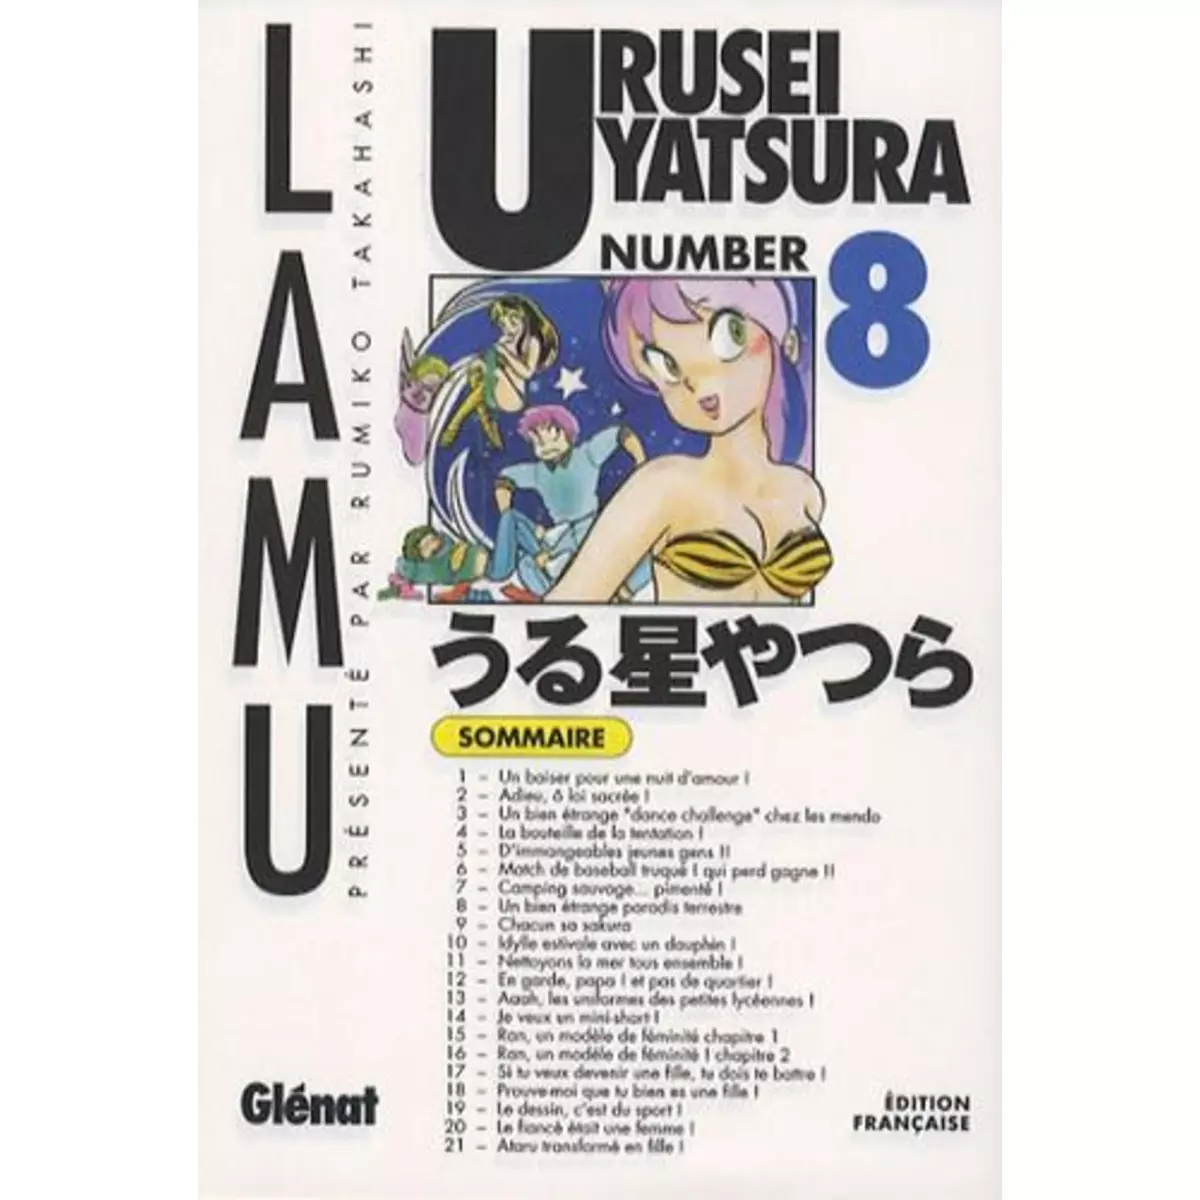  URUSEI YATSURA TOME 8, Takahashi Rumiko